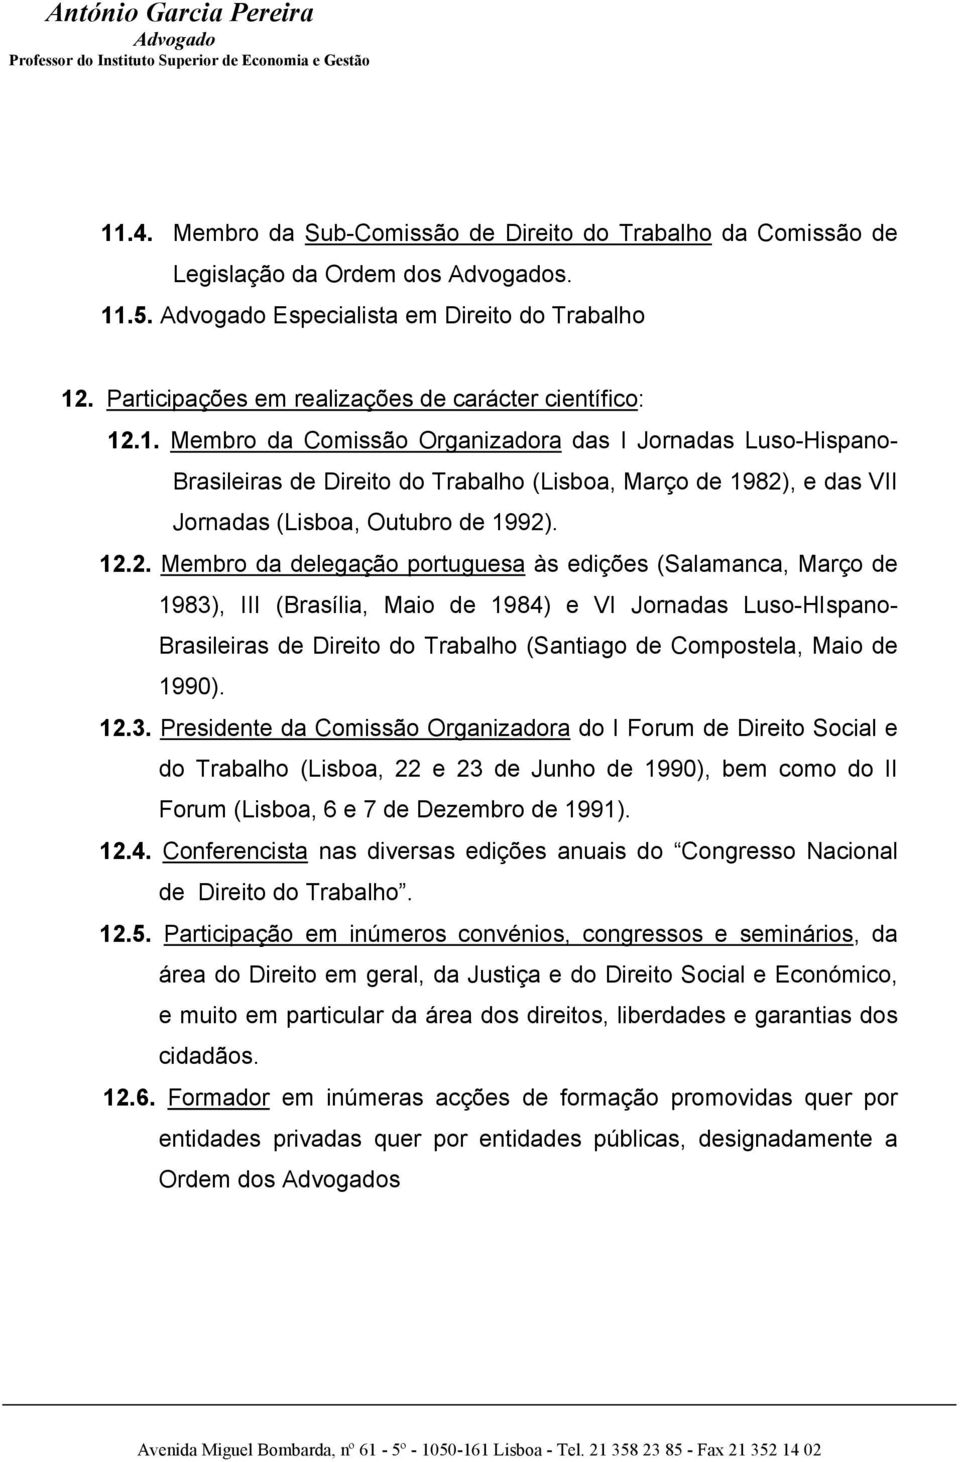 de 1990). 12.3. Presidente da Comissão Organizadora do I Forum de Direito Social e do Trabalho (Lisboa, 22 e 23 de Junho de 1990), bem como do II Forum (Lisboa, 6 e 7 de Dezembro de 1991). 12.4.